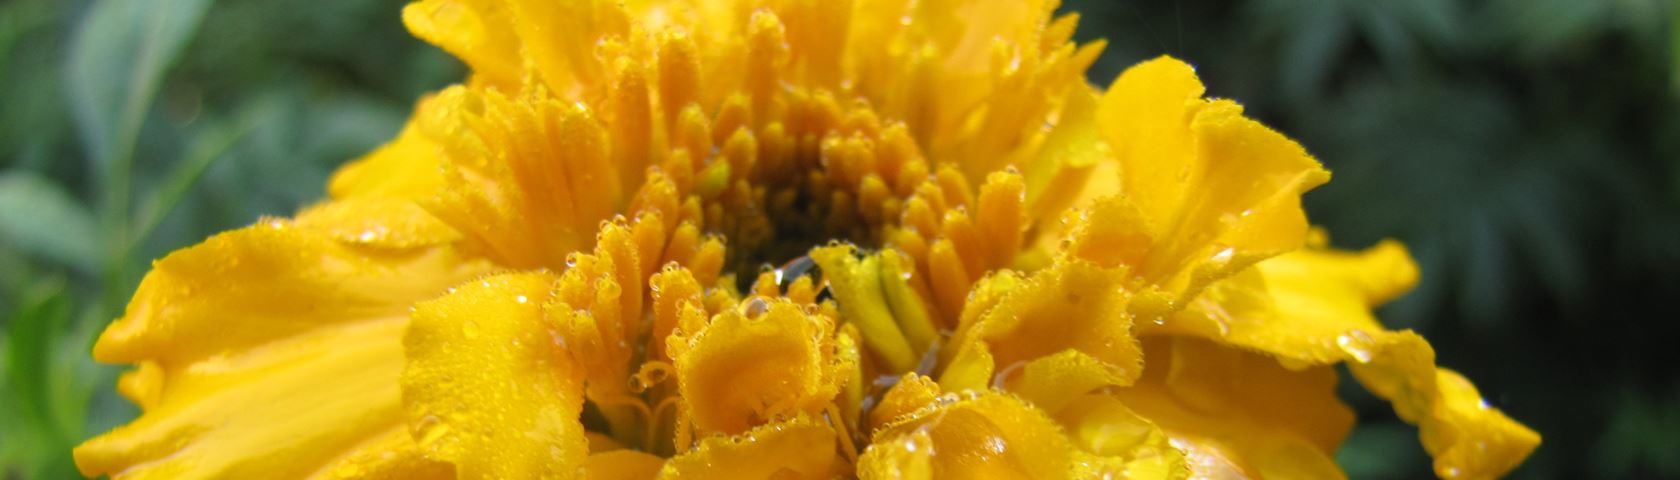 Marigold Yellow in the Rain